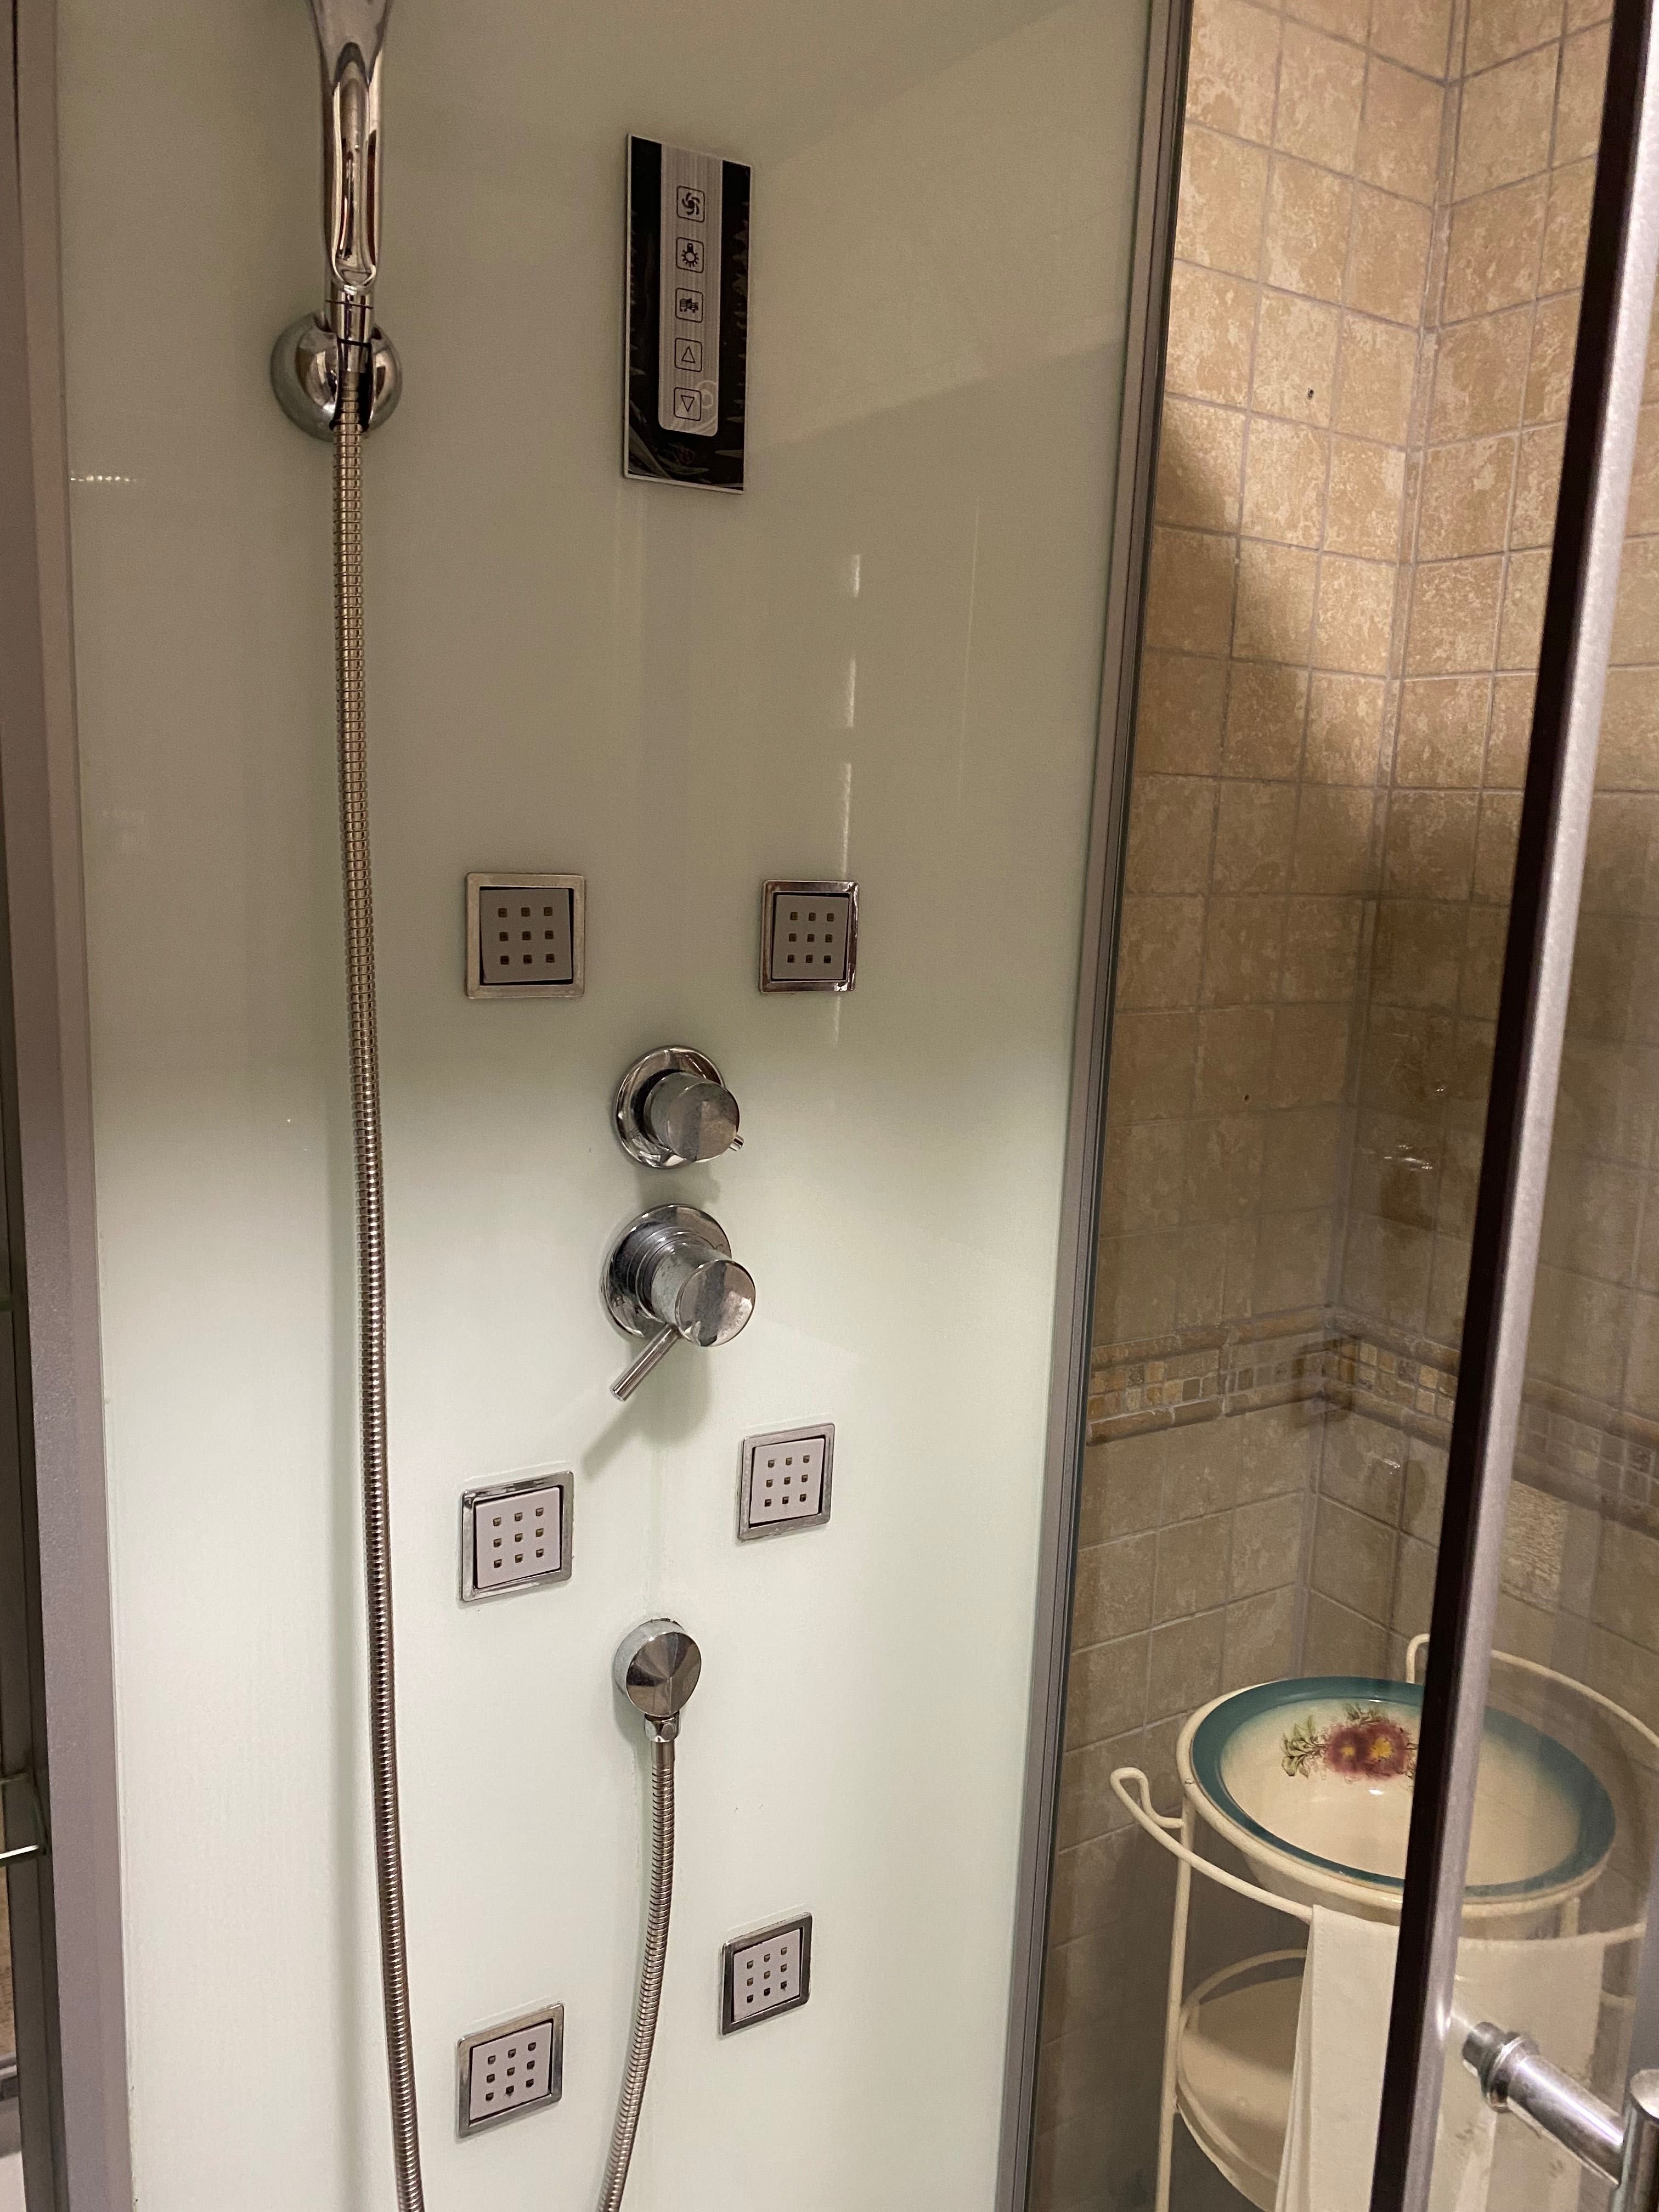 Cabine de duche com interior branco